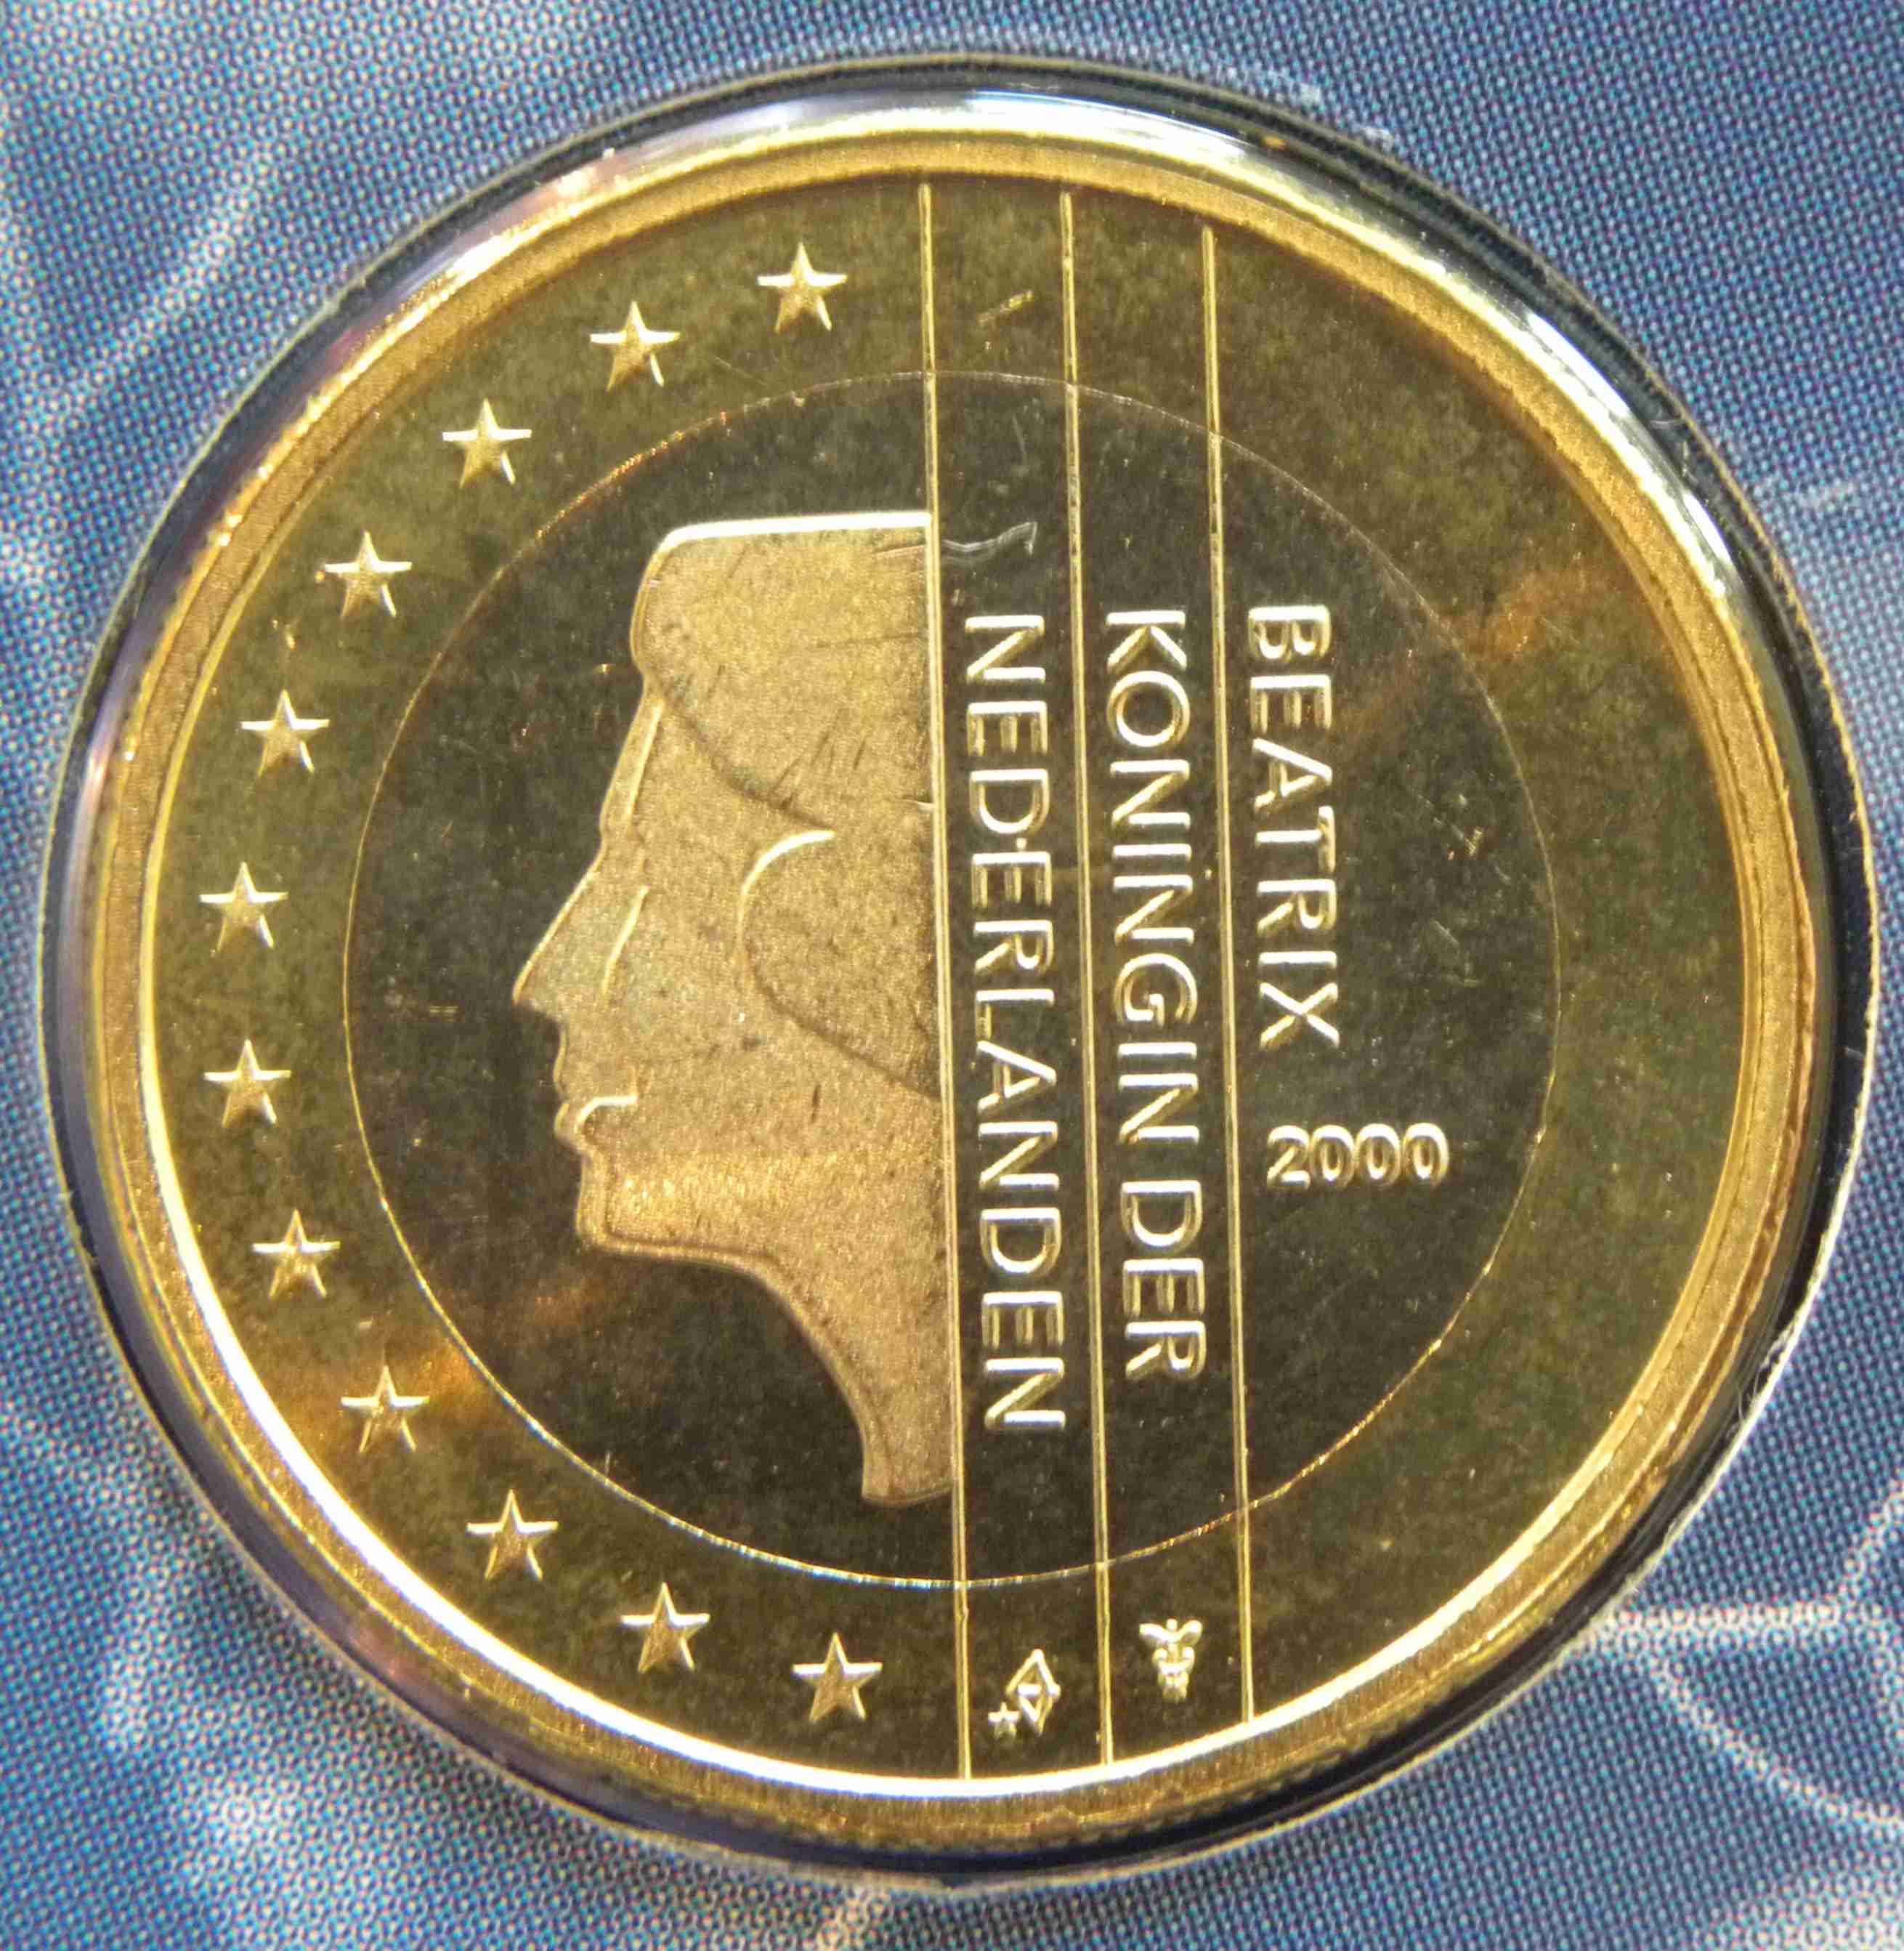 Niederlande 1 Euro Münze 2000 - euro-muenzen.tv - Der Online Euromünzen